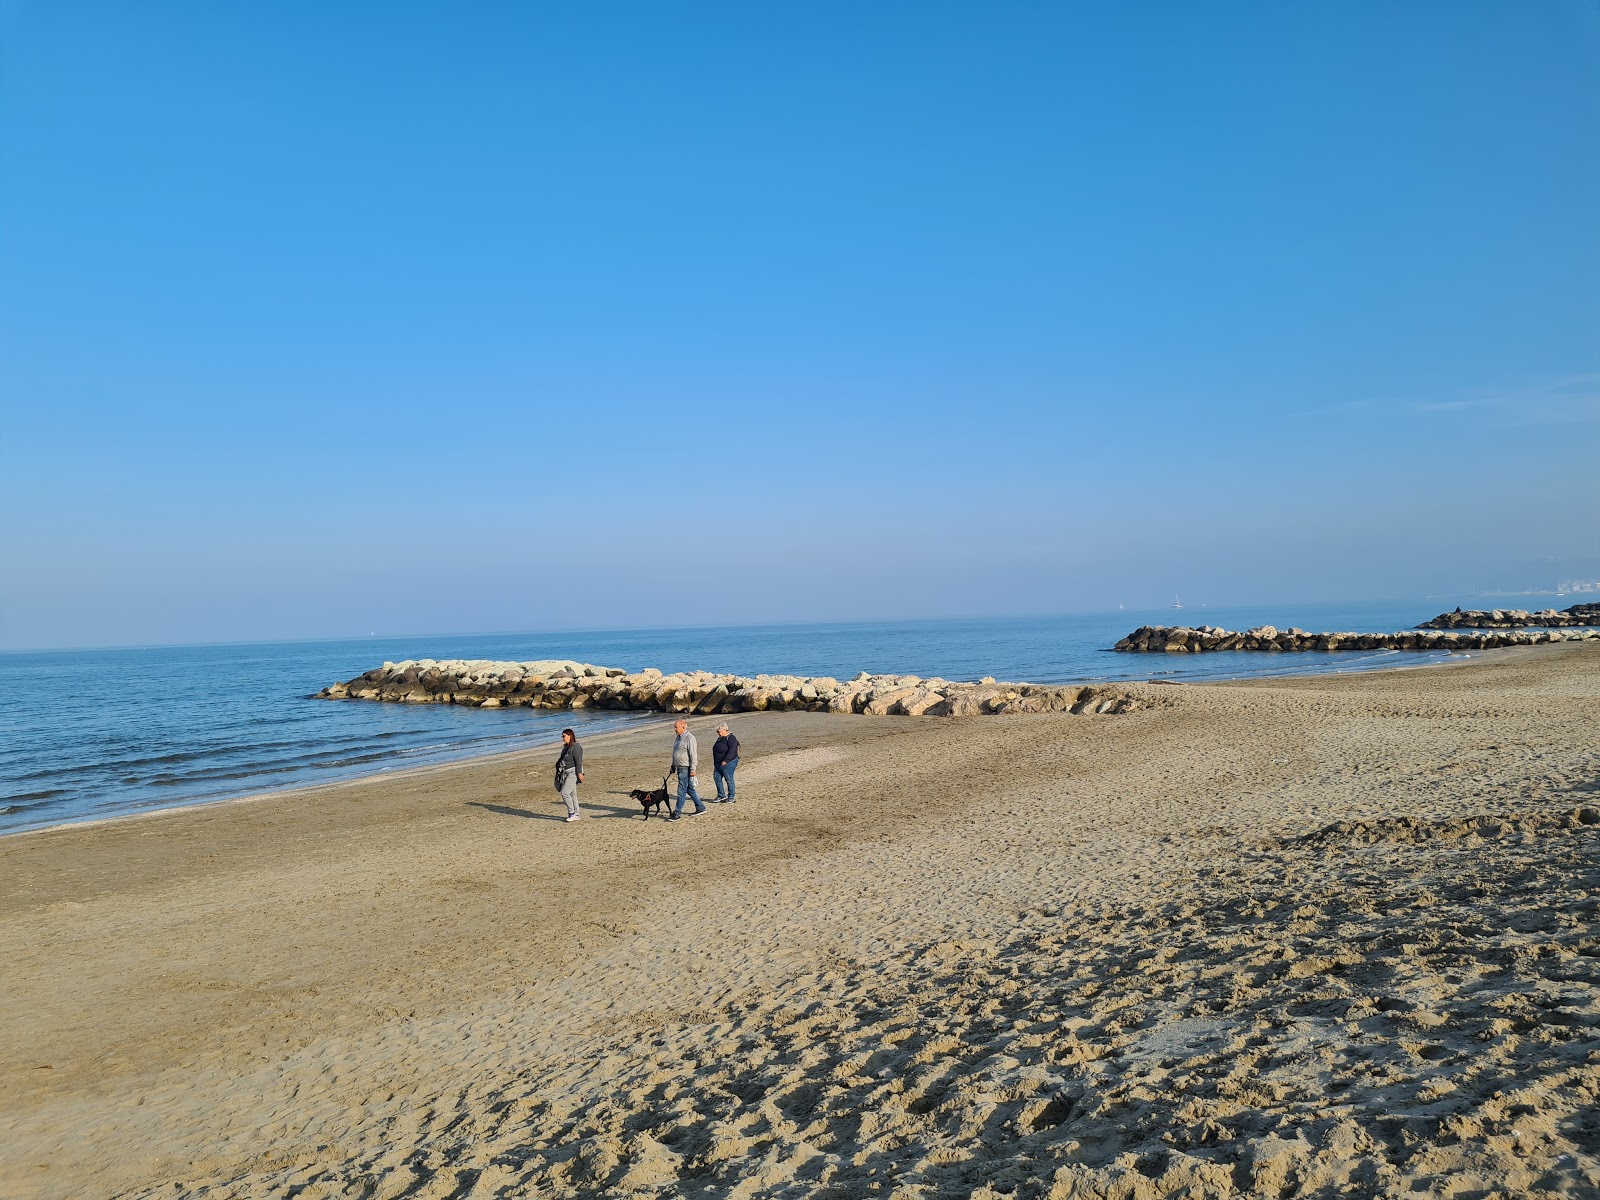 里维埃拉·罗曼尼奥拉海滩的照片 具有非常干净级别的清洁度